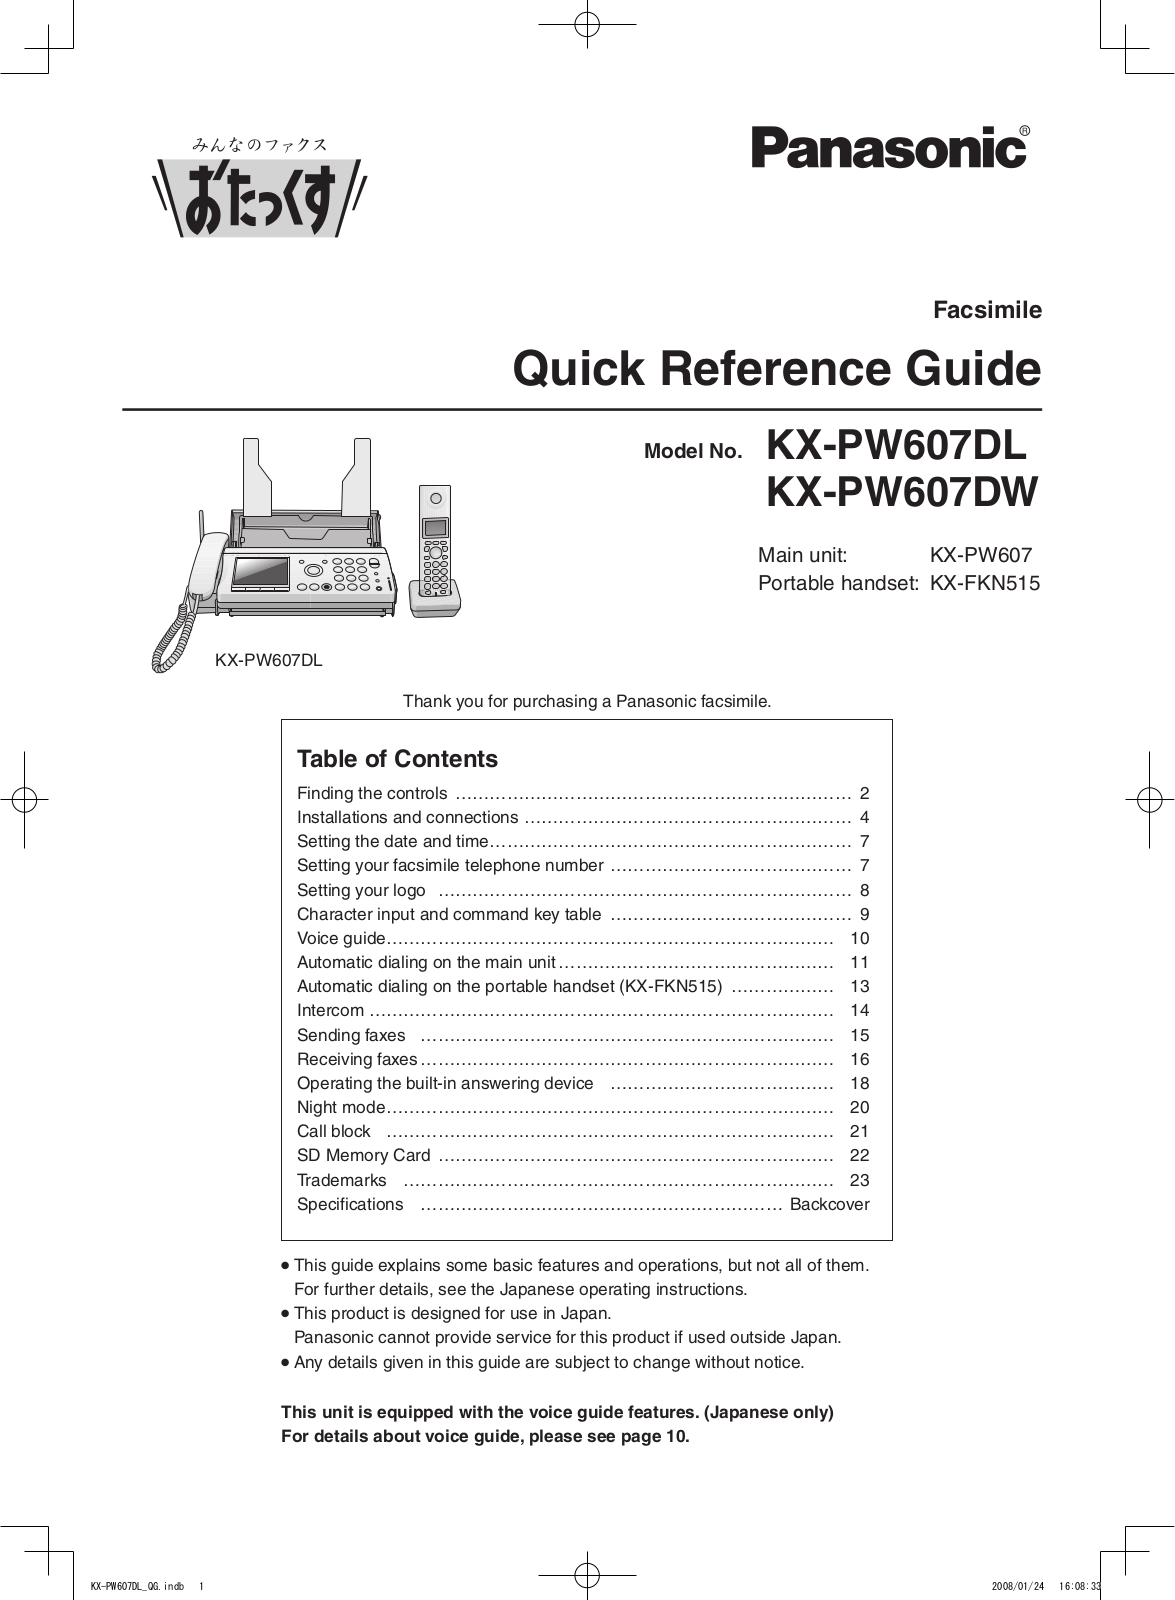 Panasonic KX-PW607DL, KX-PW607DW User Manual